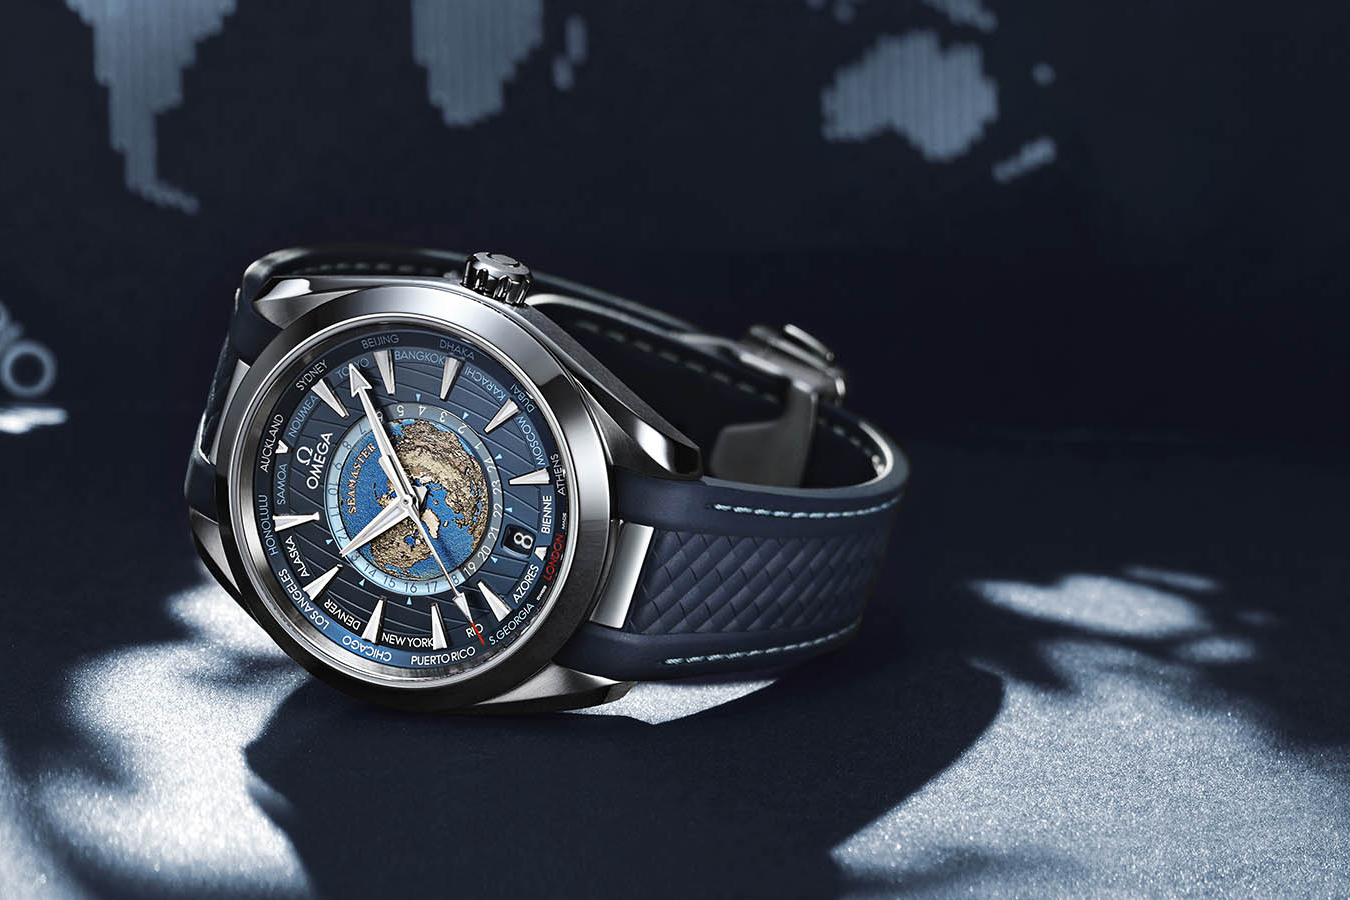 Nếu bạn là người yêu thích sự sang trọng và đẳng cấp, đồng hồ Omega Seamaster sẽ là sự lựa chọn hoàn hảo cho bạn. Với thiết kế tinh tế và chất lượng vượt trội, chiếc đồng hồ này sẽ đem lại cho bạn sự tự tin và thể hiện phong cách của riêng mình.